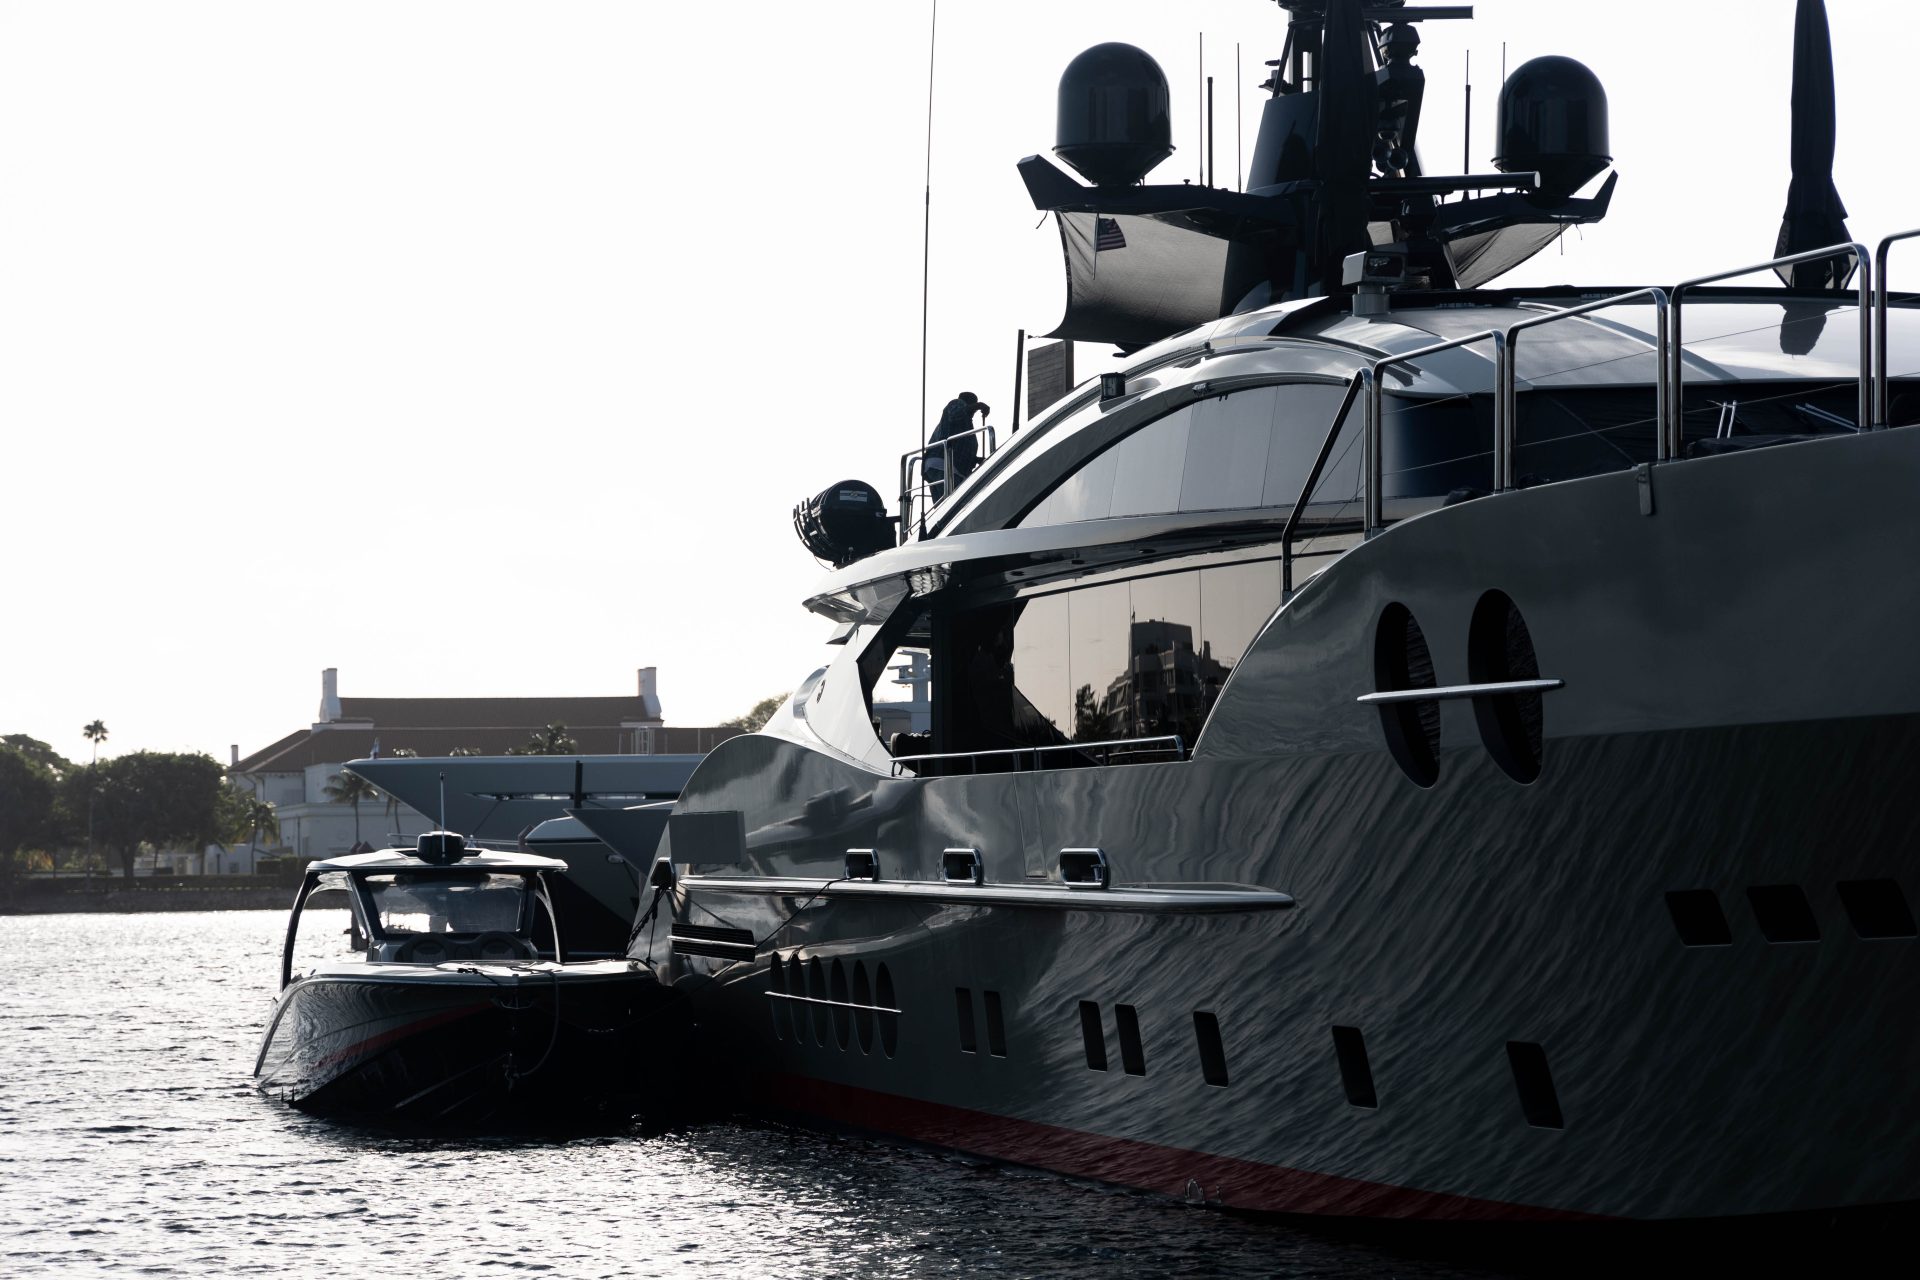 luxury yacht broker jobs